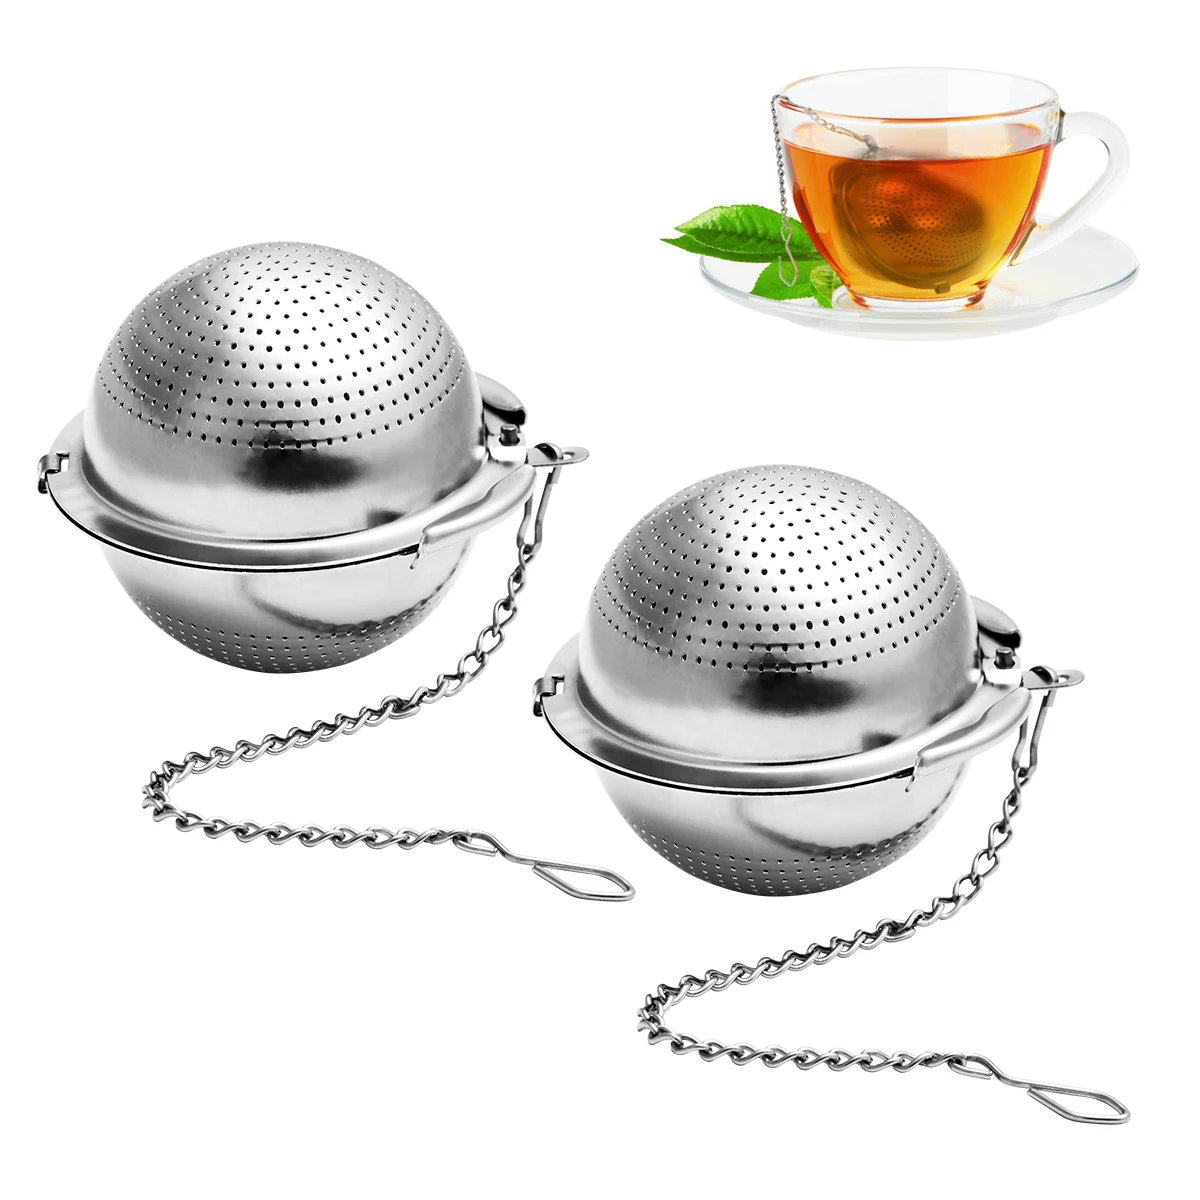 Ситечко в кружку. Ситечко для чая "Tea Filter Screen" (sa-576). Ситечко для чая Minton. Ситечко для чая Sphere. Ситечко шар для заварки чая.